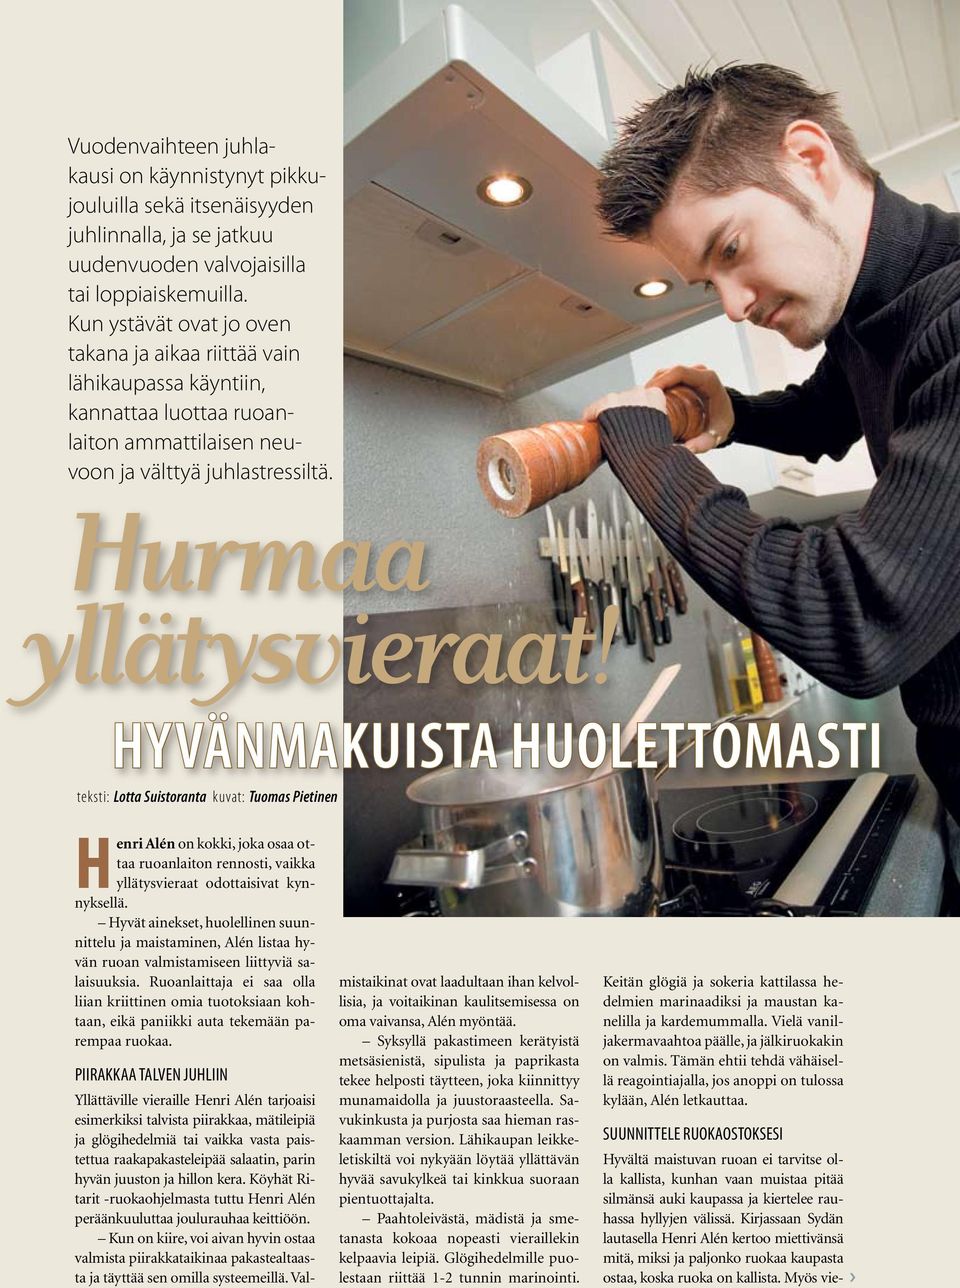 Hyvänmakuista huolettomasti teksti: Lotta Suistoranta kuvat: Tuomas Pietinen Henri Alén on kokki, joka osaa ottaa ruoanlaiton rennosti, vaikka yllätysvieraat odottaisivat kynnyksellä.